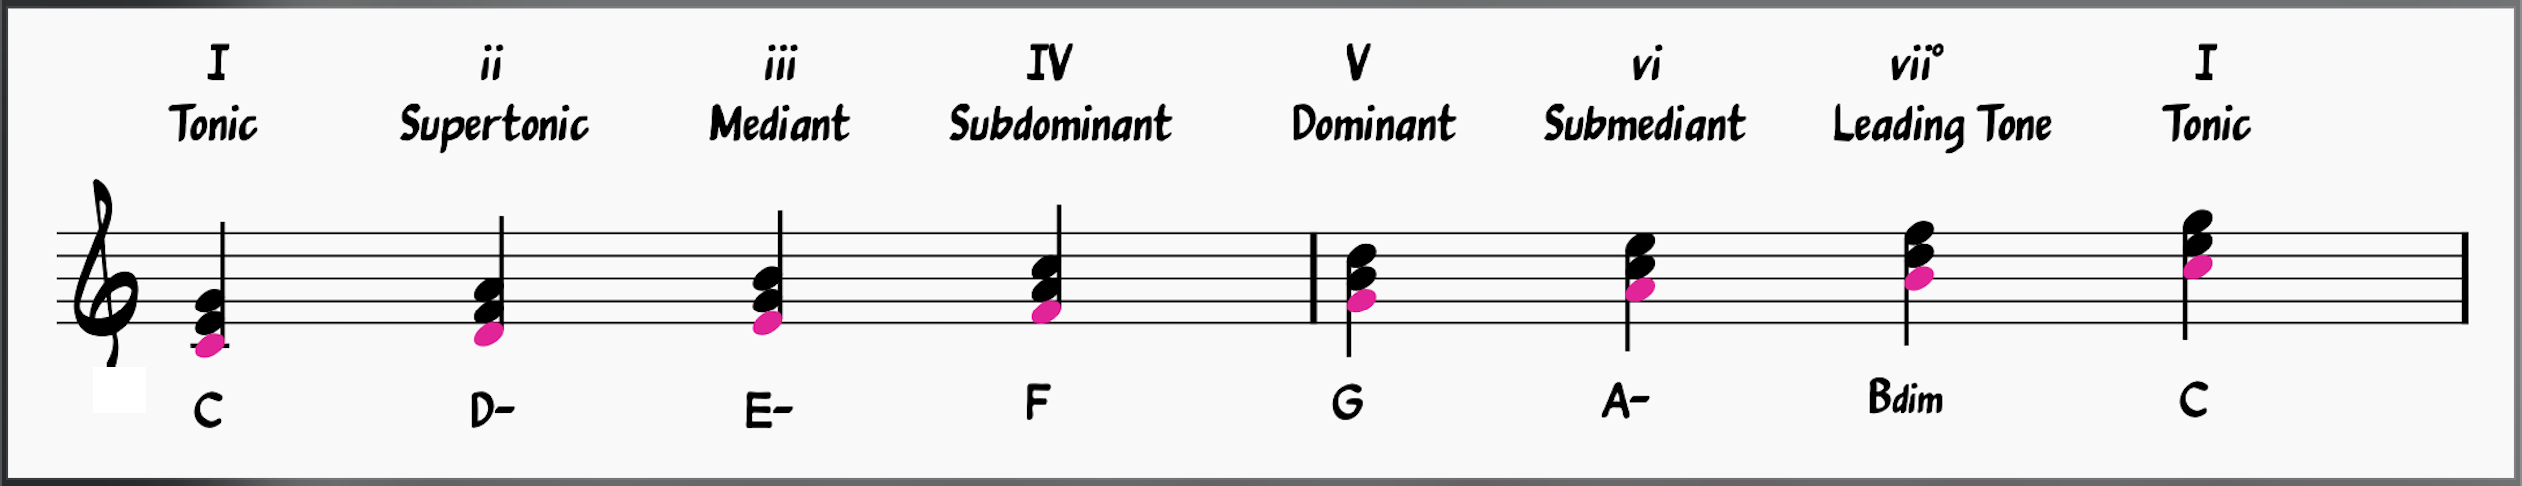 Diatonic chords in C major